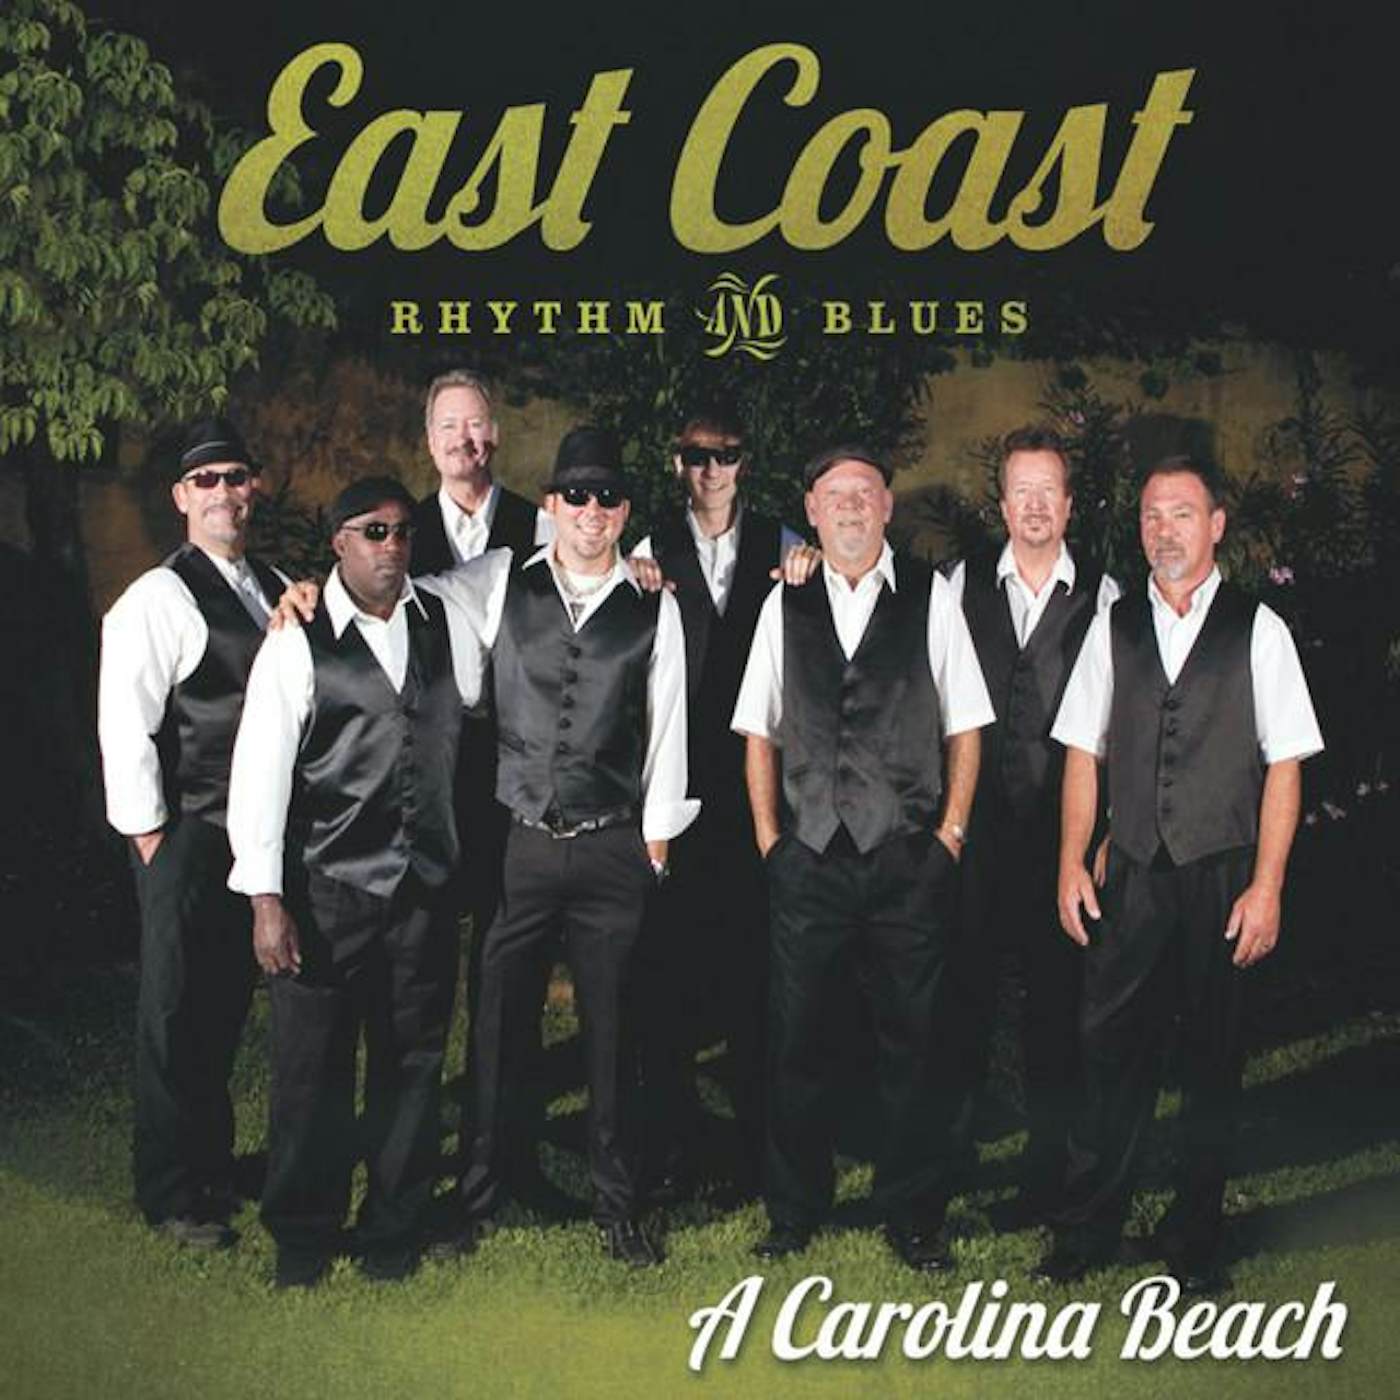 East Coast Rhythm & Blues